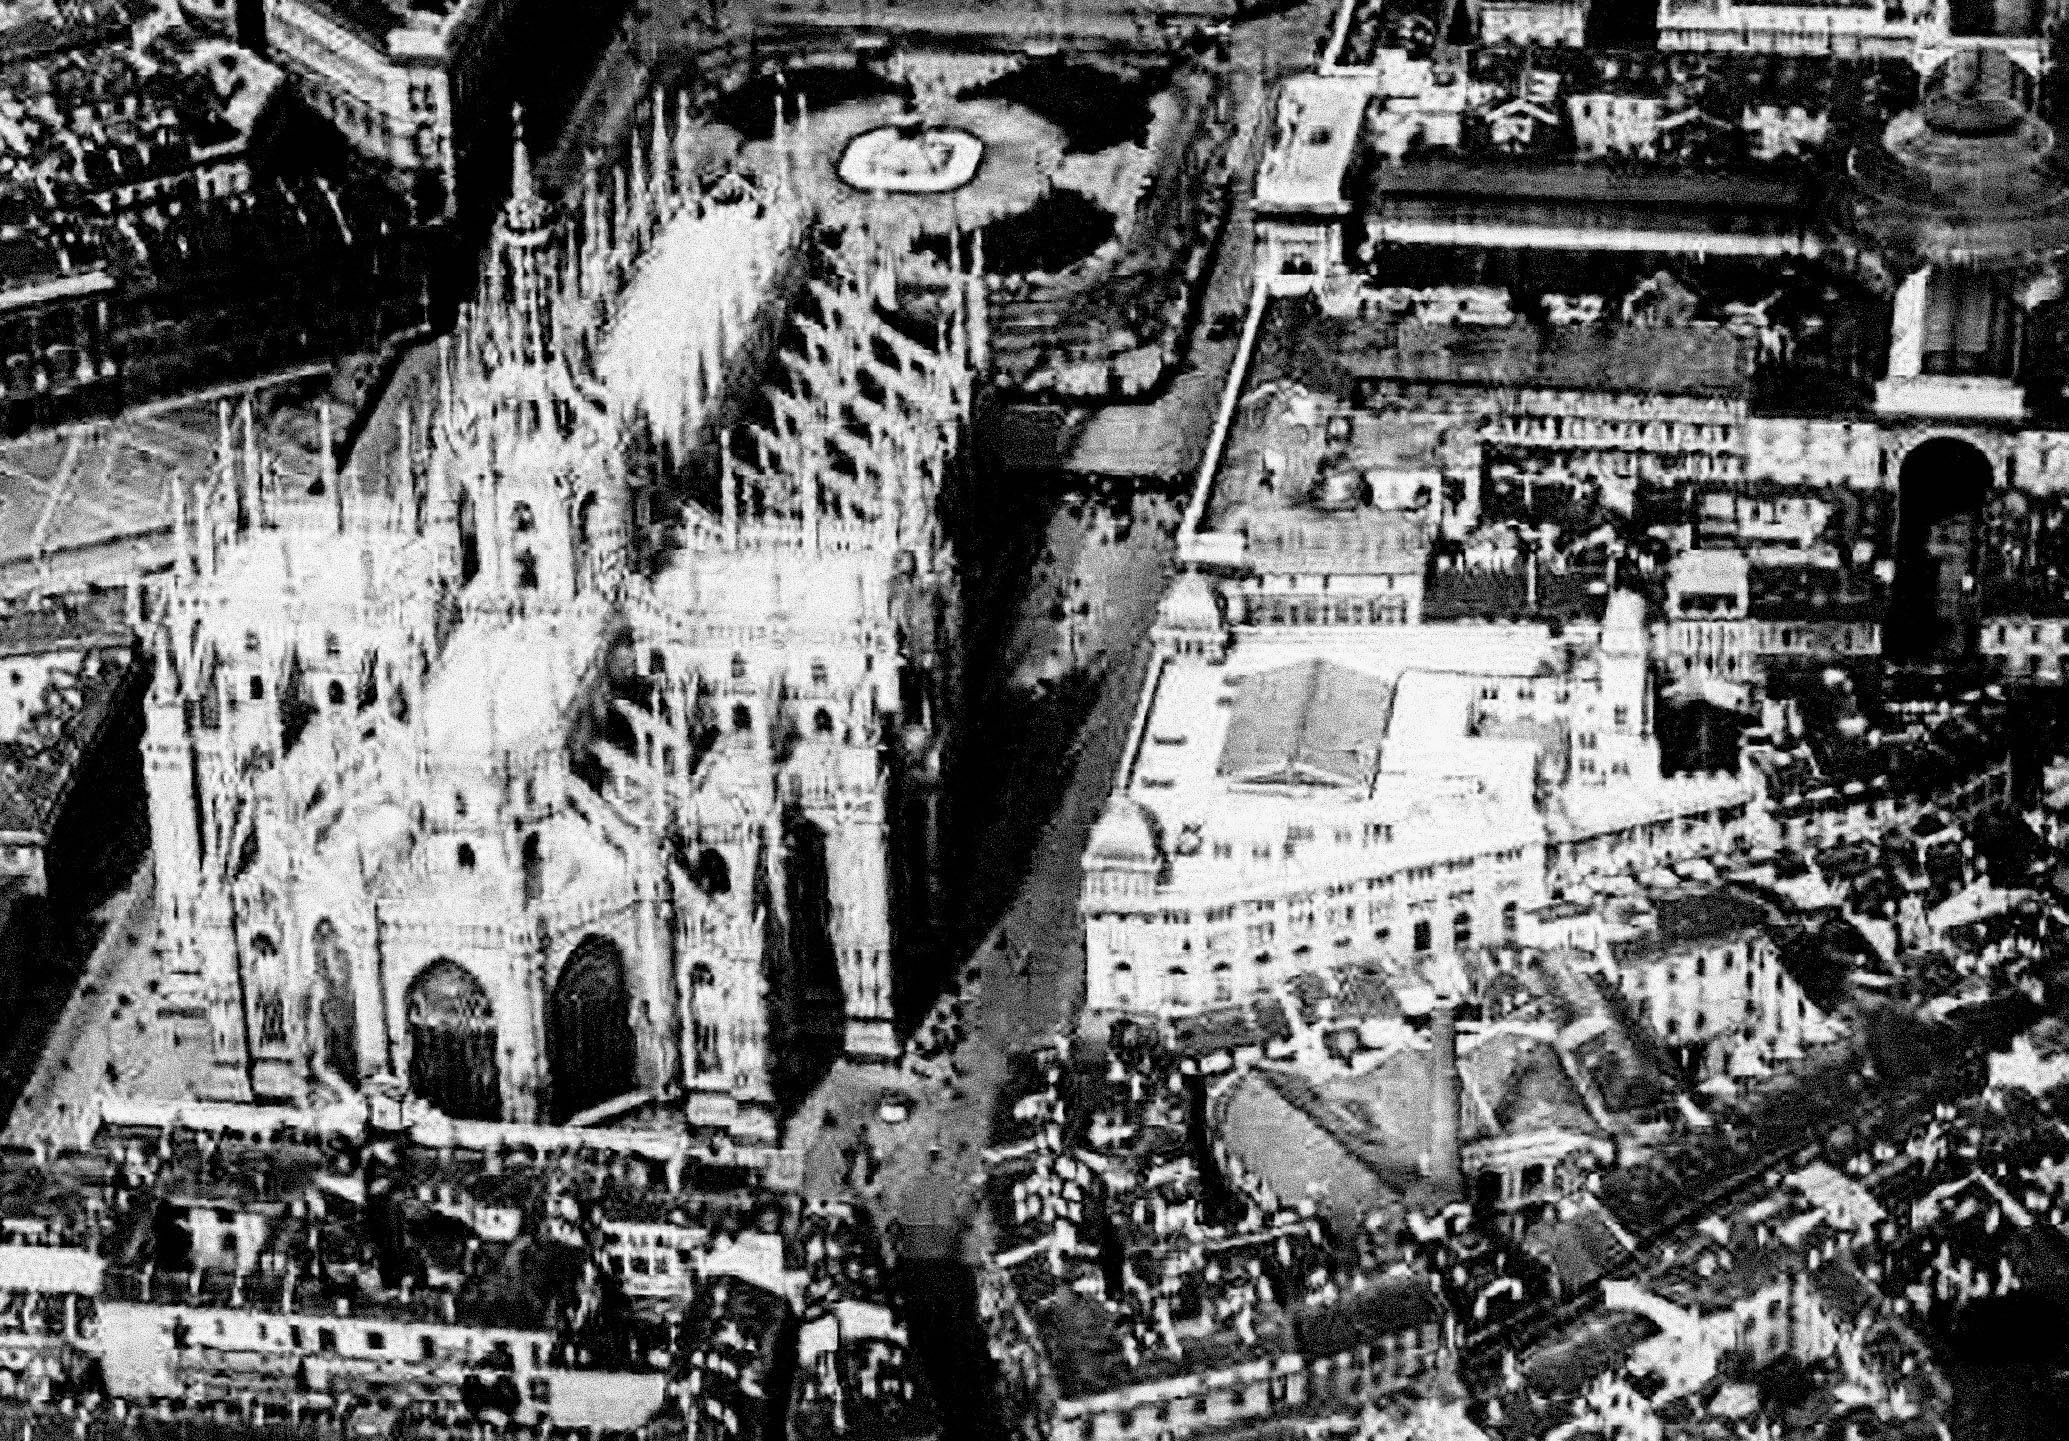 Duomo di Milano - Confetteria Baj - Centrale Termoelettrica Edison Colombo - Veduta aerea di fine '800